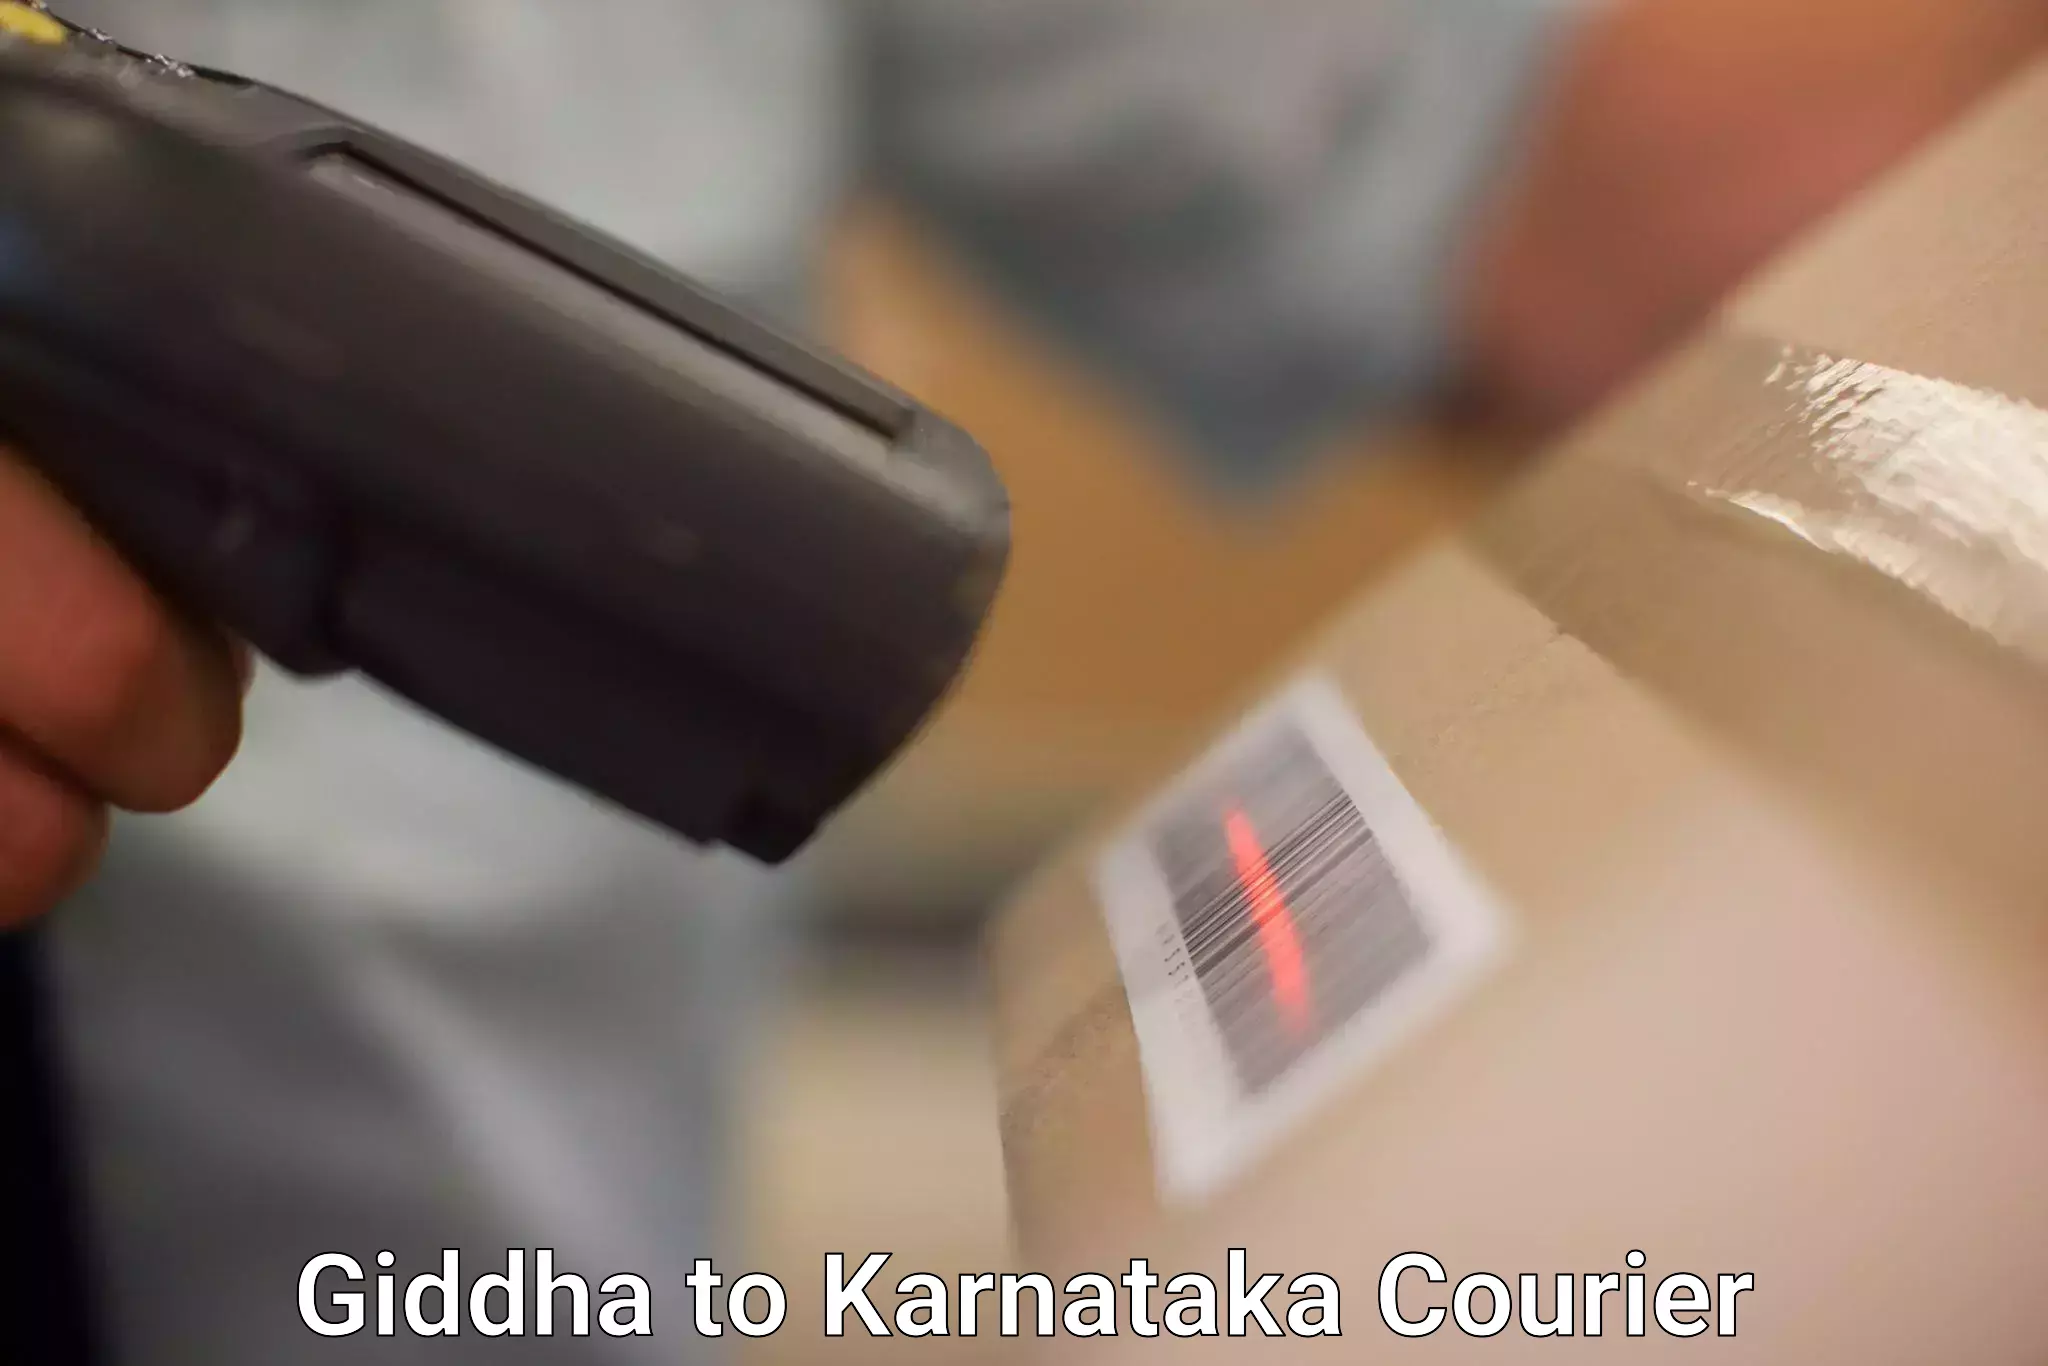 On-time shipping guarantee in Giddha to Bangarapet